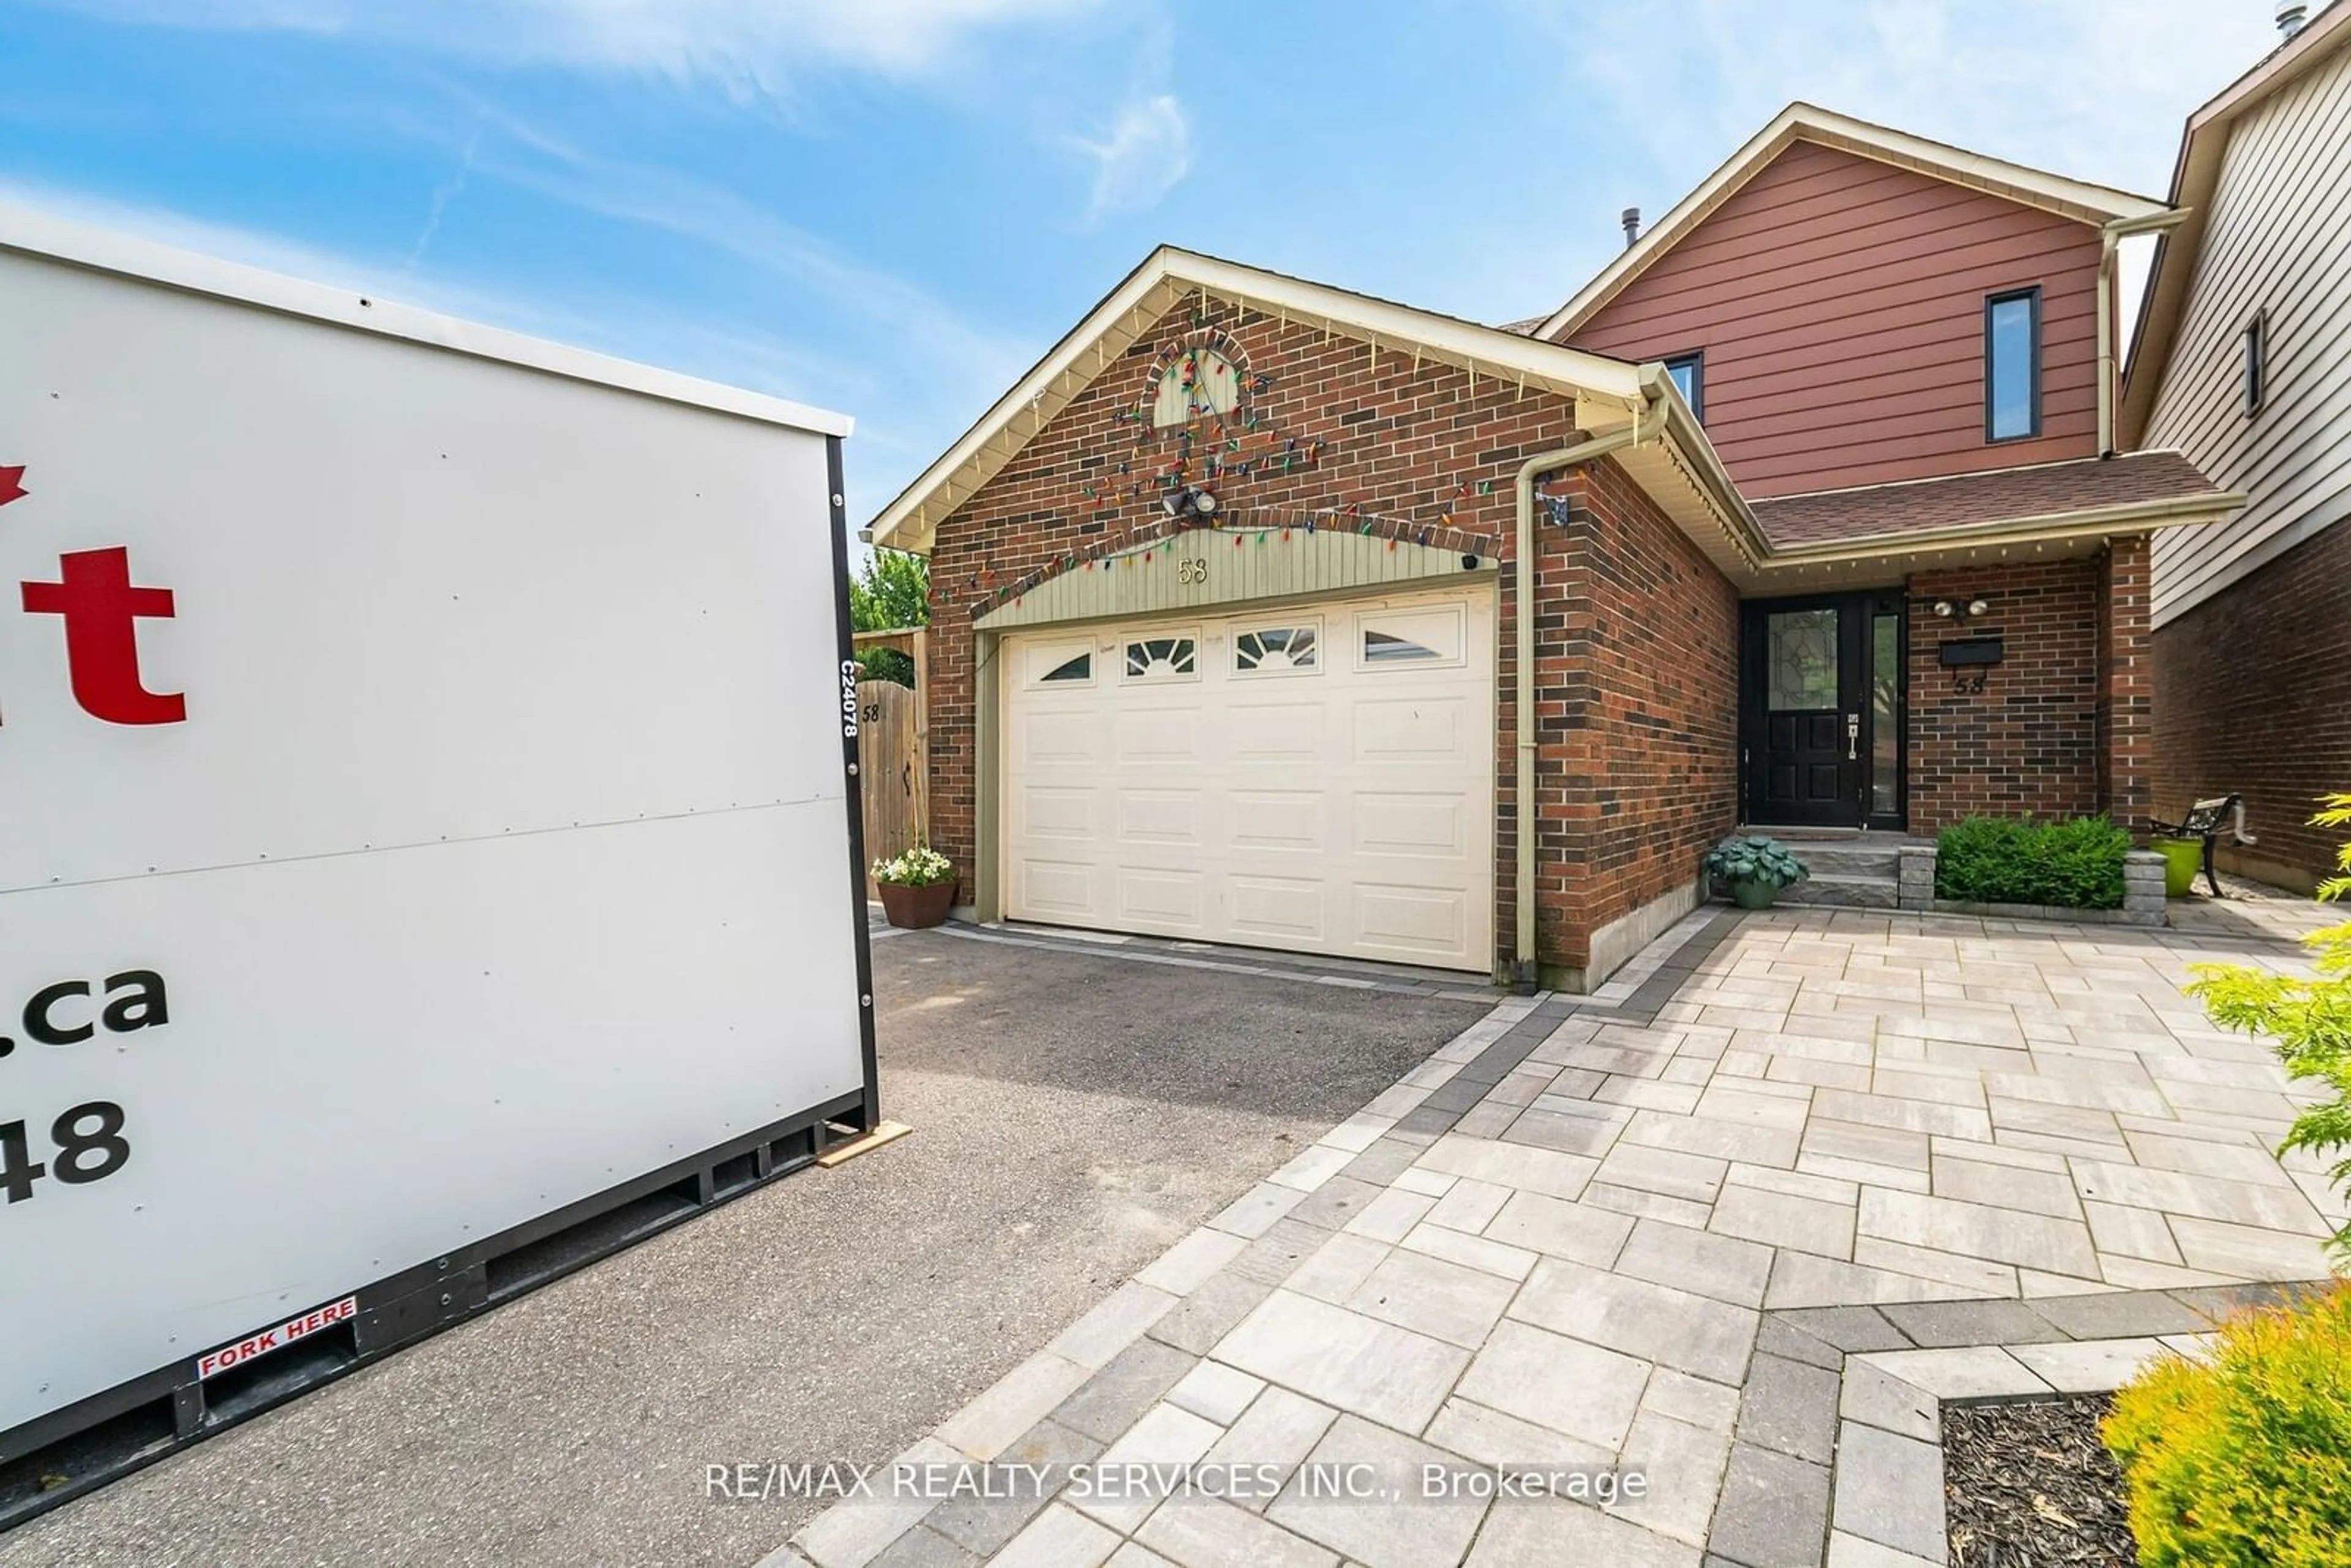 Home with brick exterior material for 58 Foxacre Row, Brampton Ontario L6V 3P5